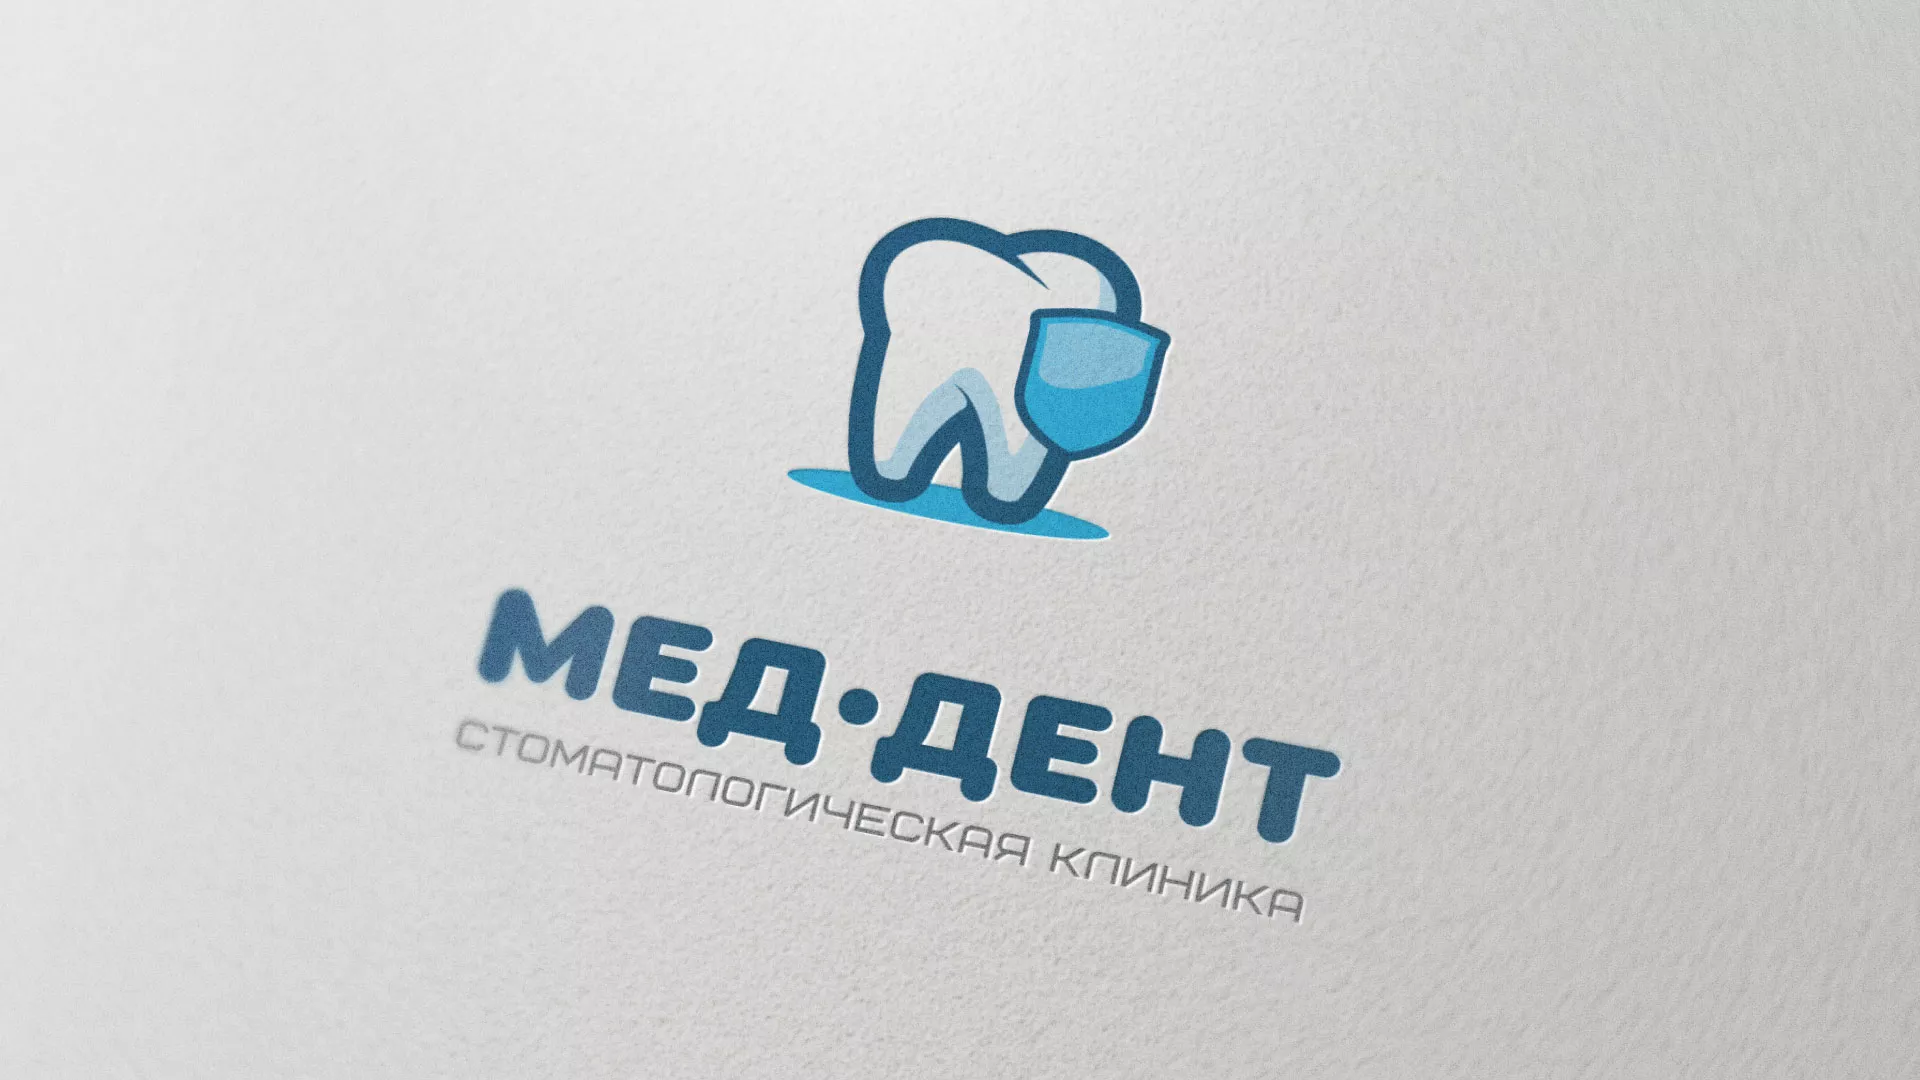 Разработка логотипа стоматологической клиники «МЕД-ДЕНТ» в Киришах